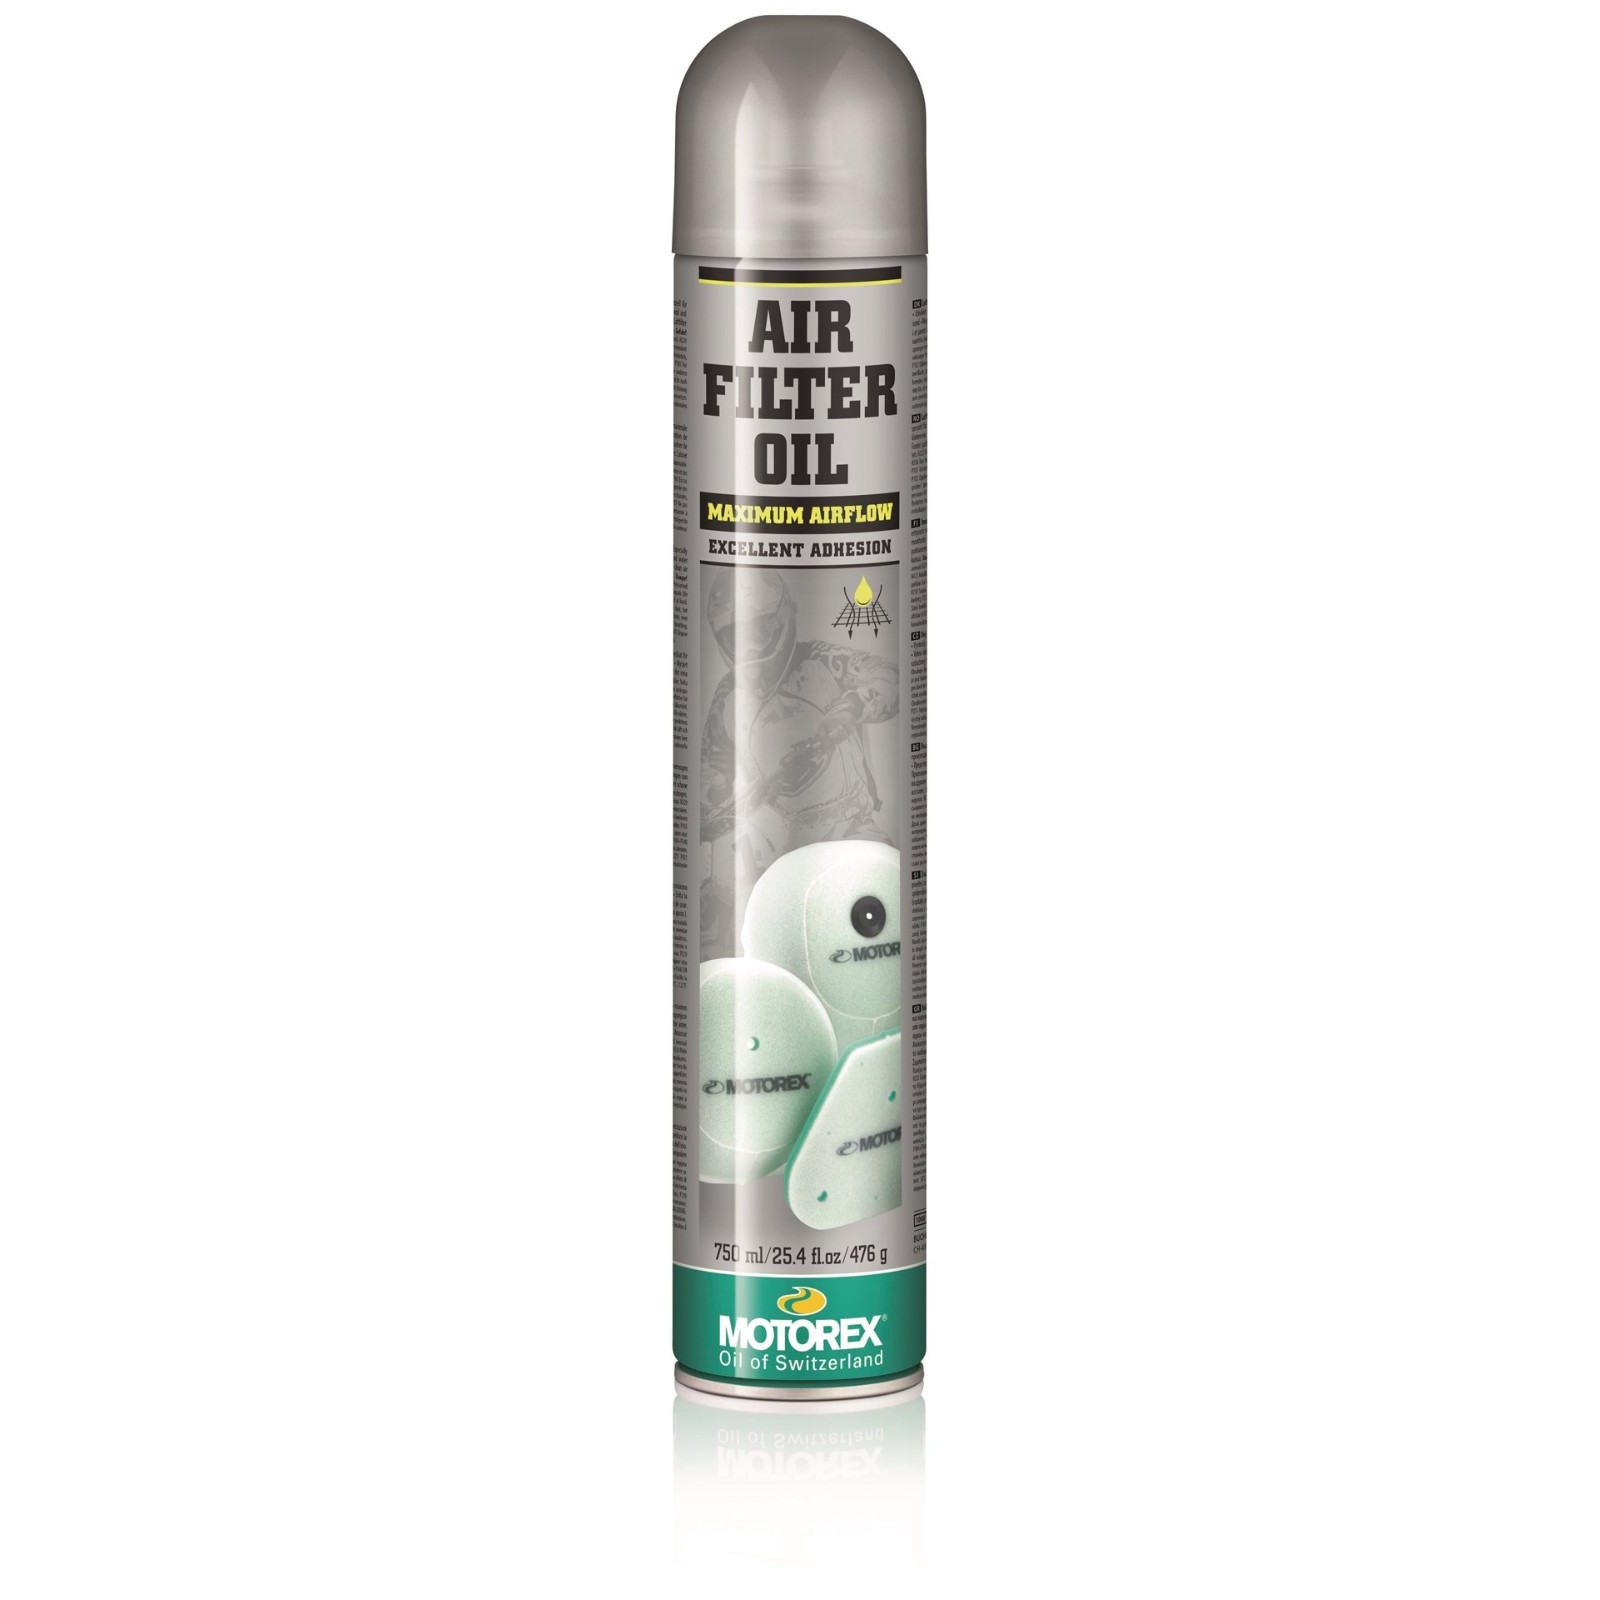 Luftfilter Pflege & Reinigung